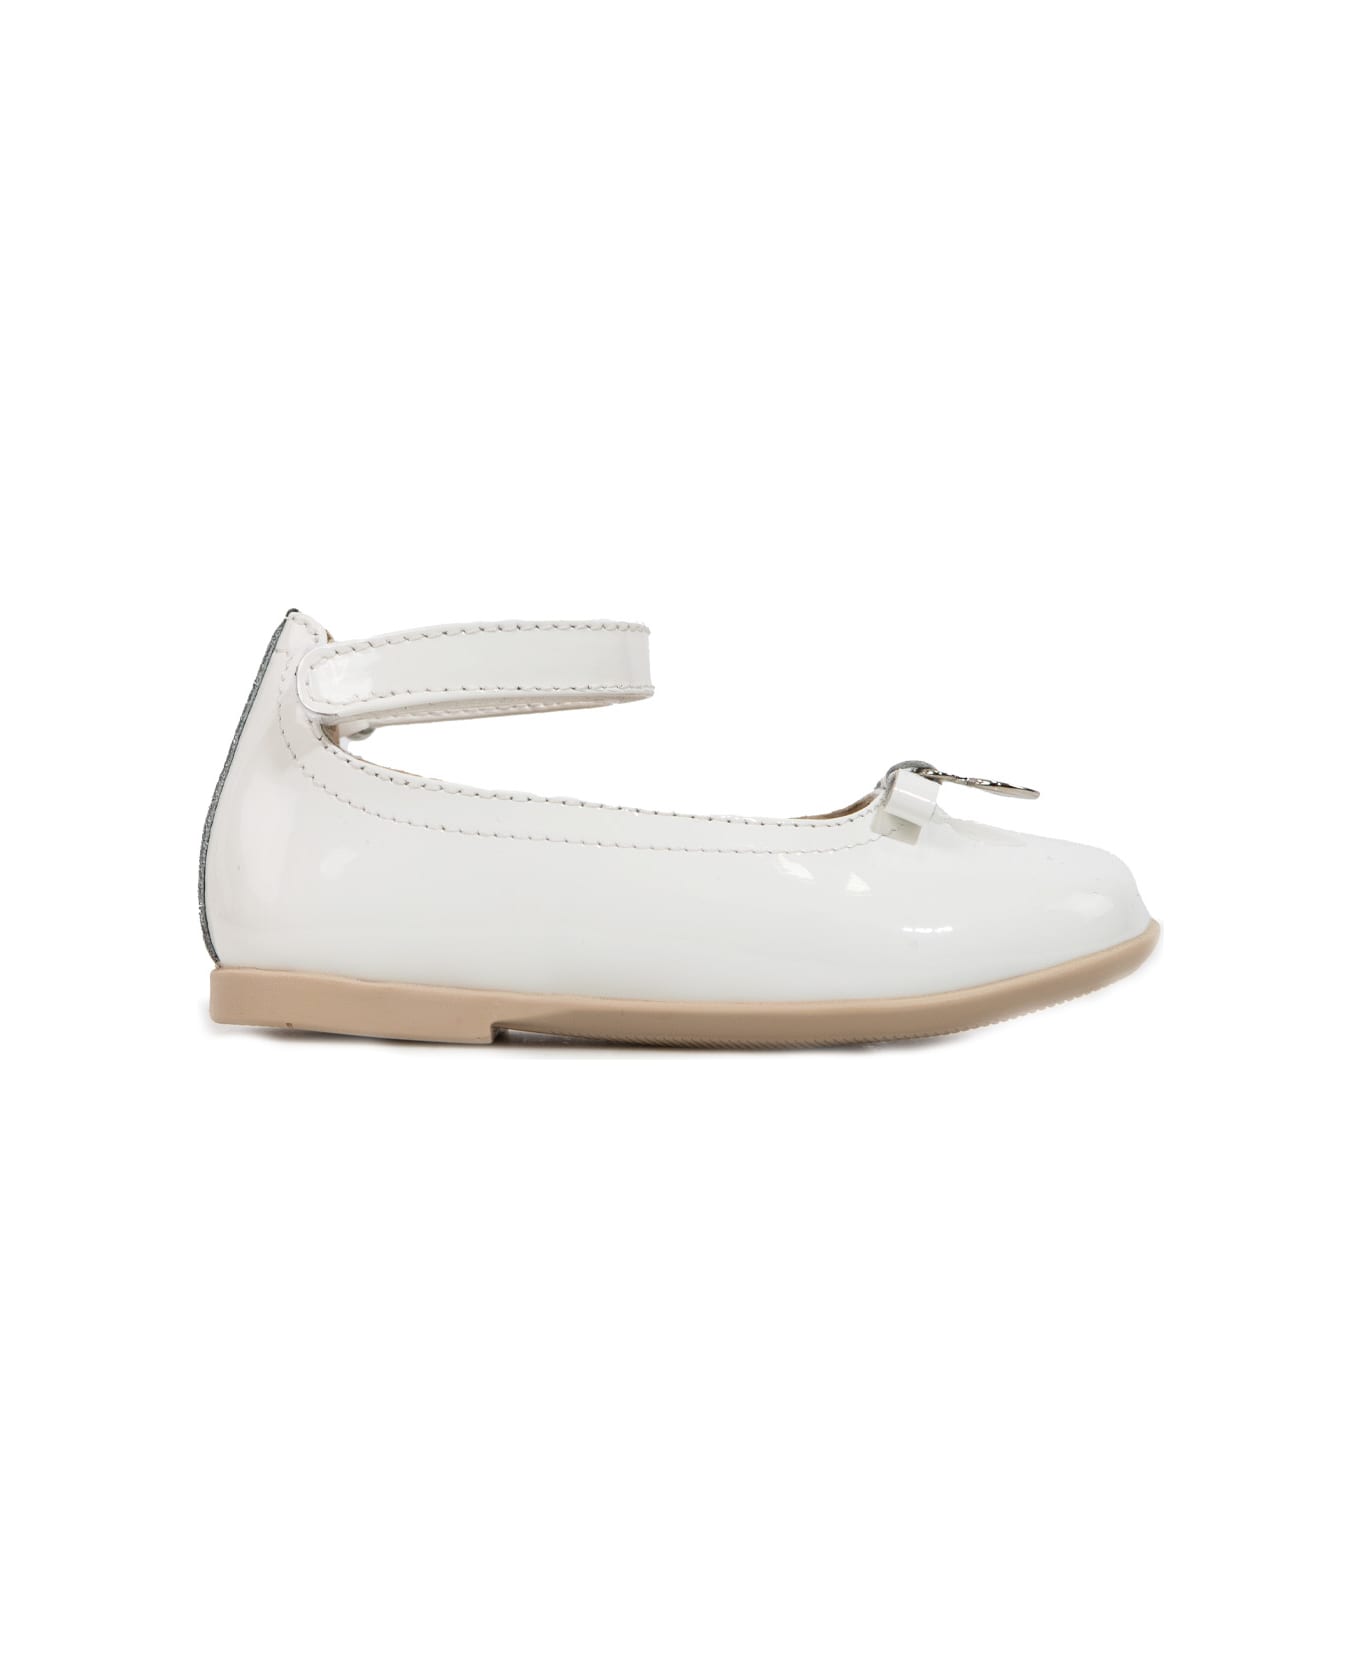 Emporio Armani Leather Shoes - White シューズ